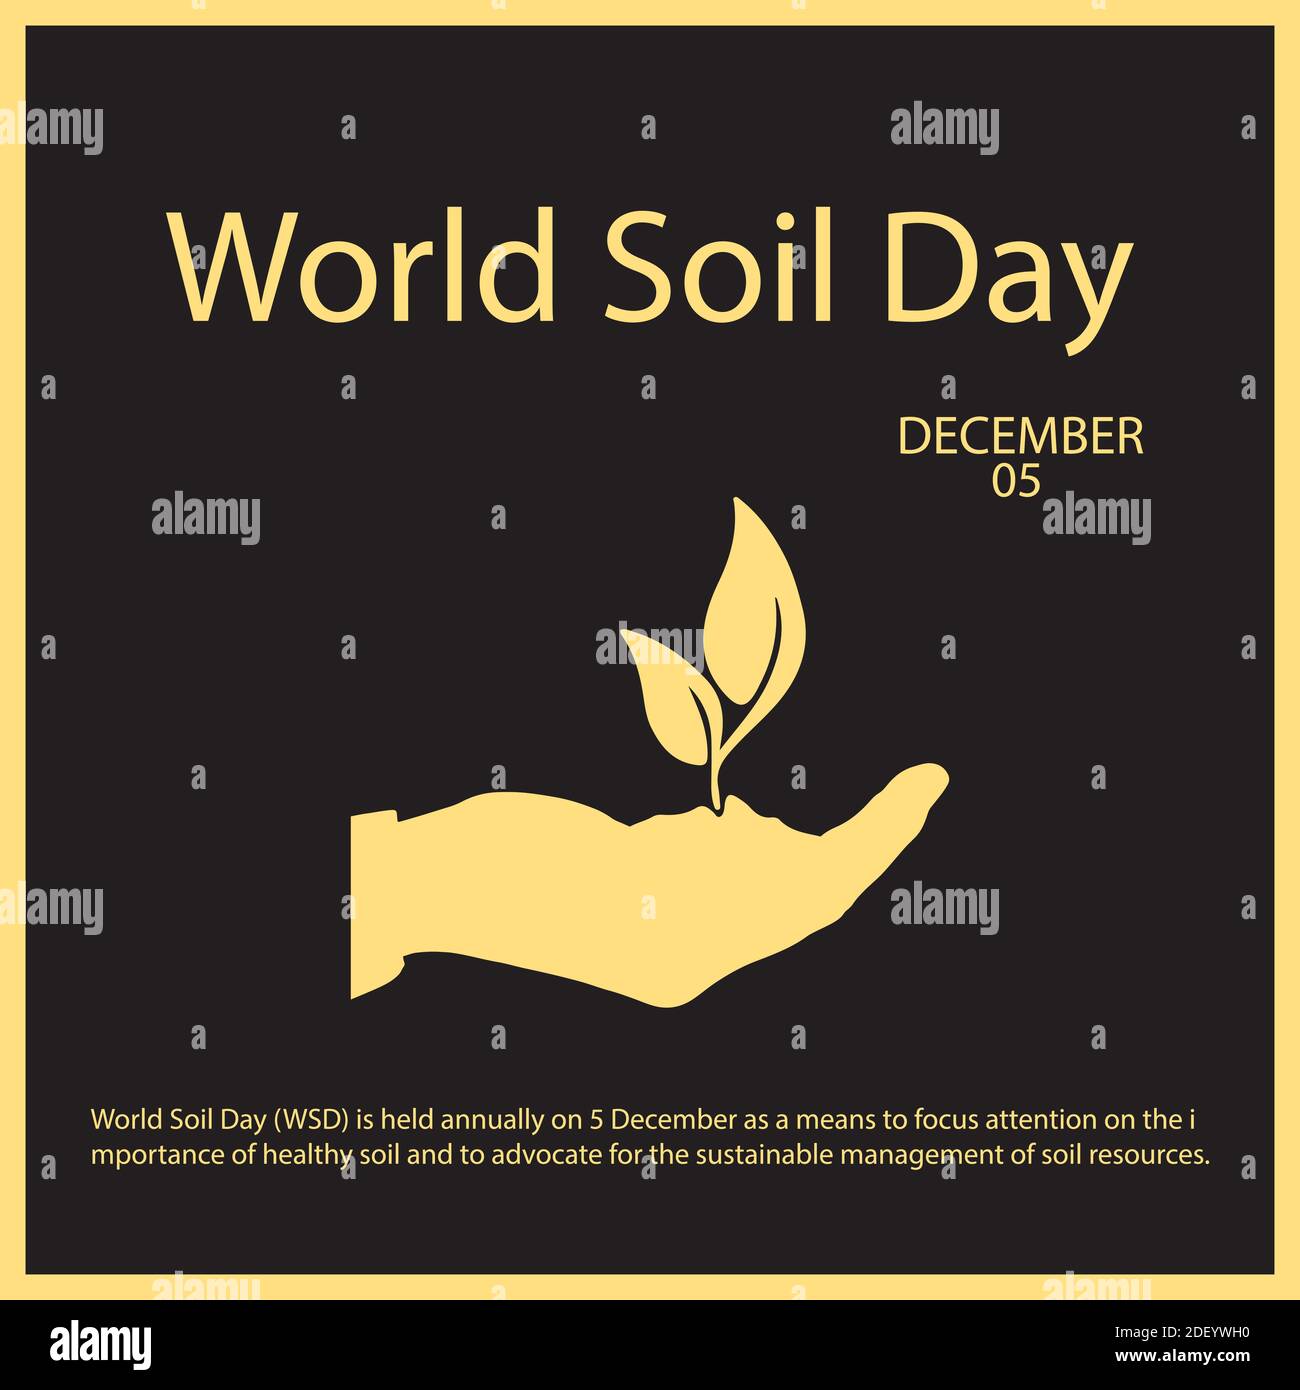 Der Weltbodentag (WSD) findet jährlich am 5. Dezember statt, um die Aufmerksamkeit auf die Bedeutung gesunder Böden zu lenken und sich dafür einzusetzen. Stock Vektor